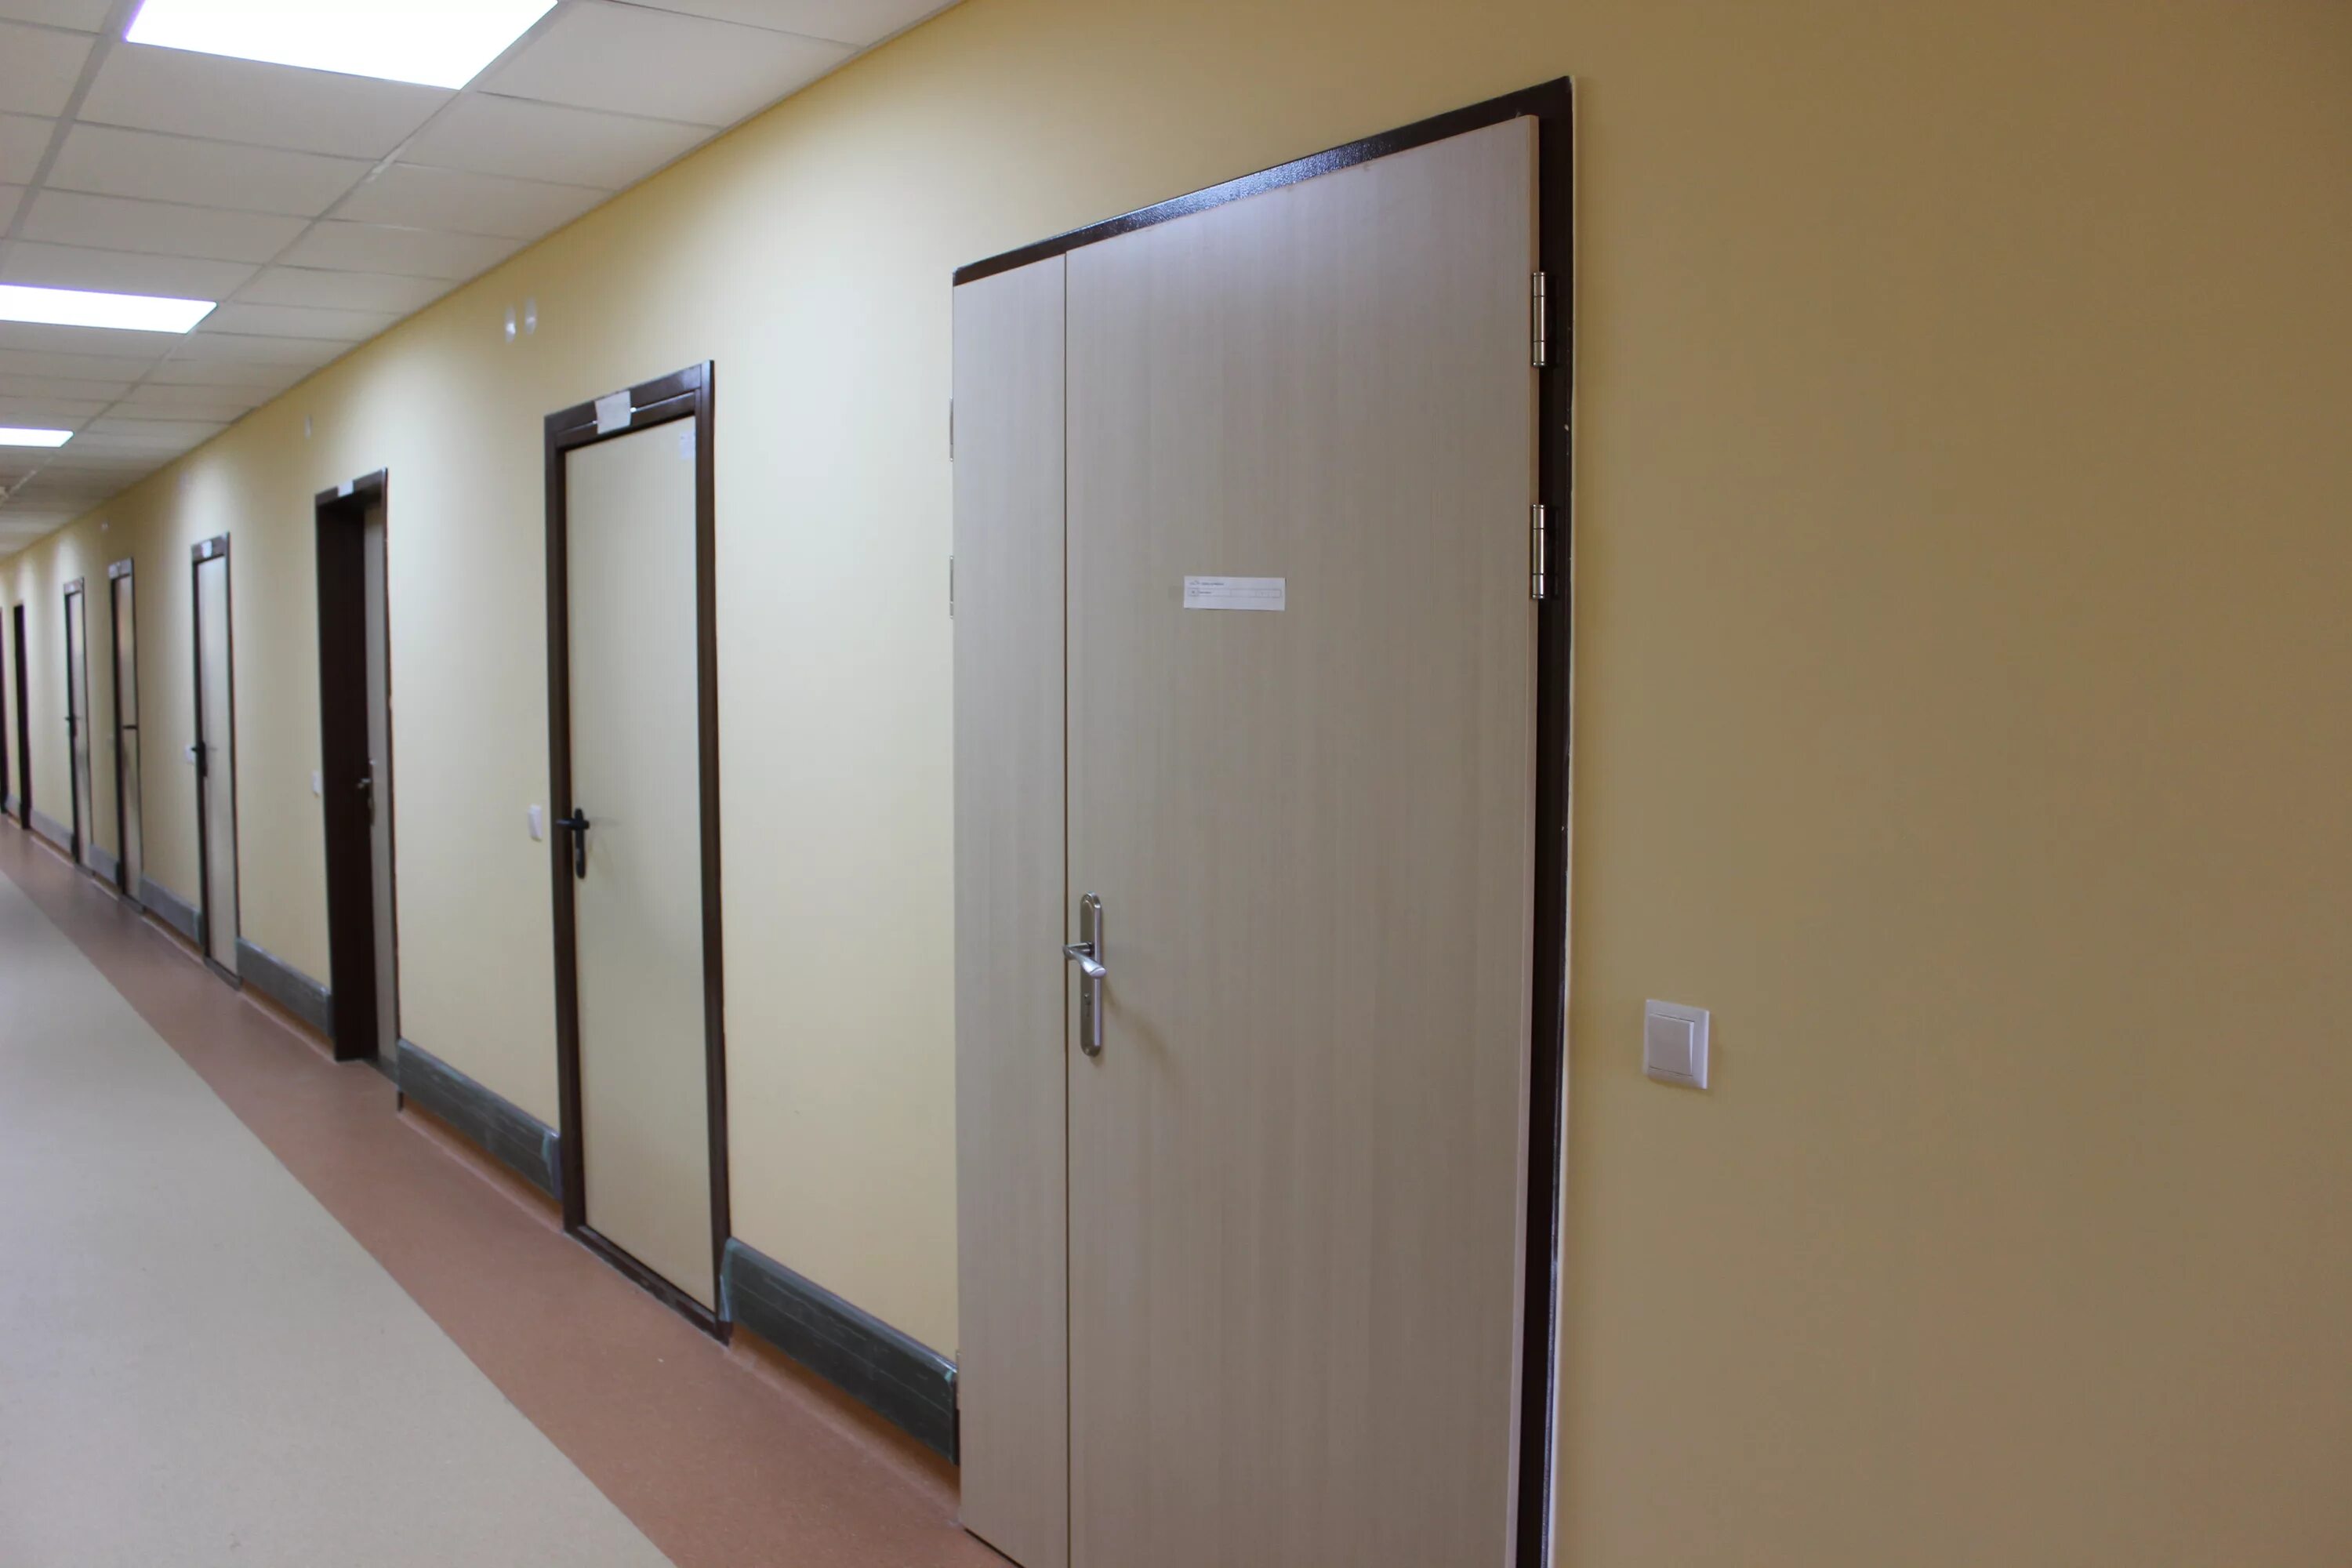 Рентгенозащитные двери ДП 1 уз. Рентгенозащитная дверь 2200 высотой 2000мм. Двери HPL для медицинских учреждений. Двери в мед учреждениях.